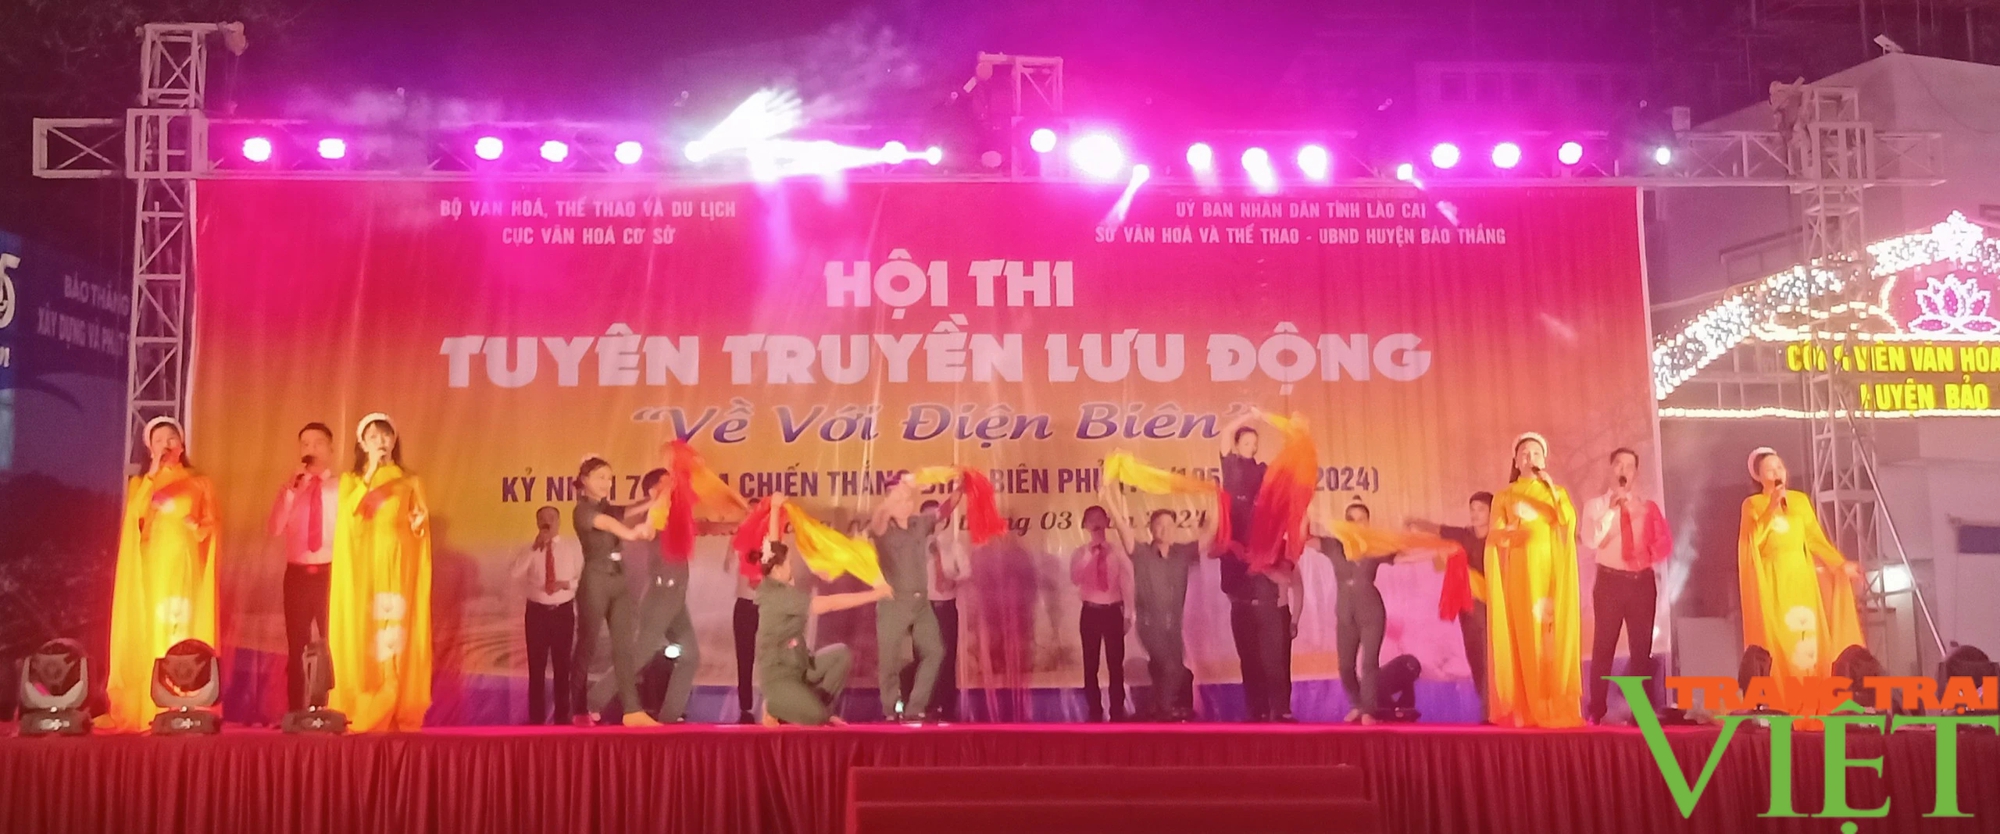 Tưng bừng hội thi "Về với Điện Biên" ở một huyện của Lào Cai, thu hút hàng nghìn khán giả- Ảnh 9.